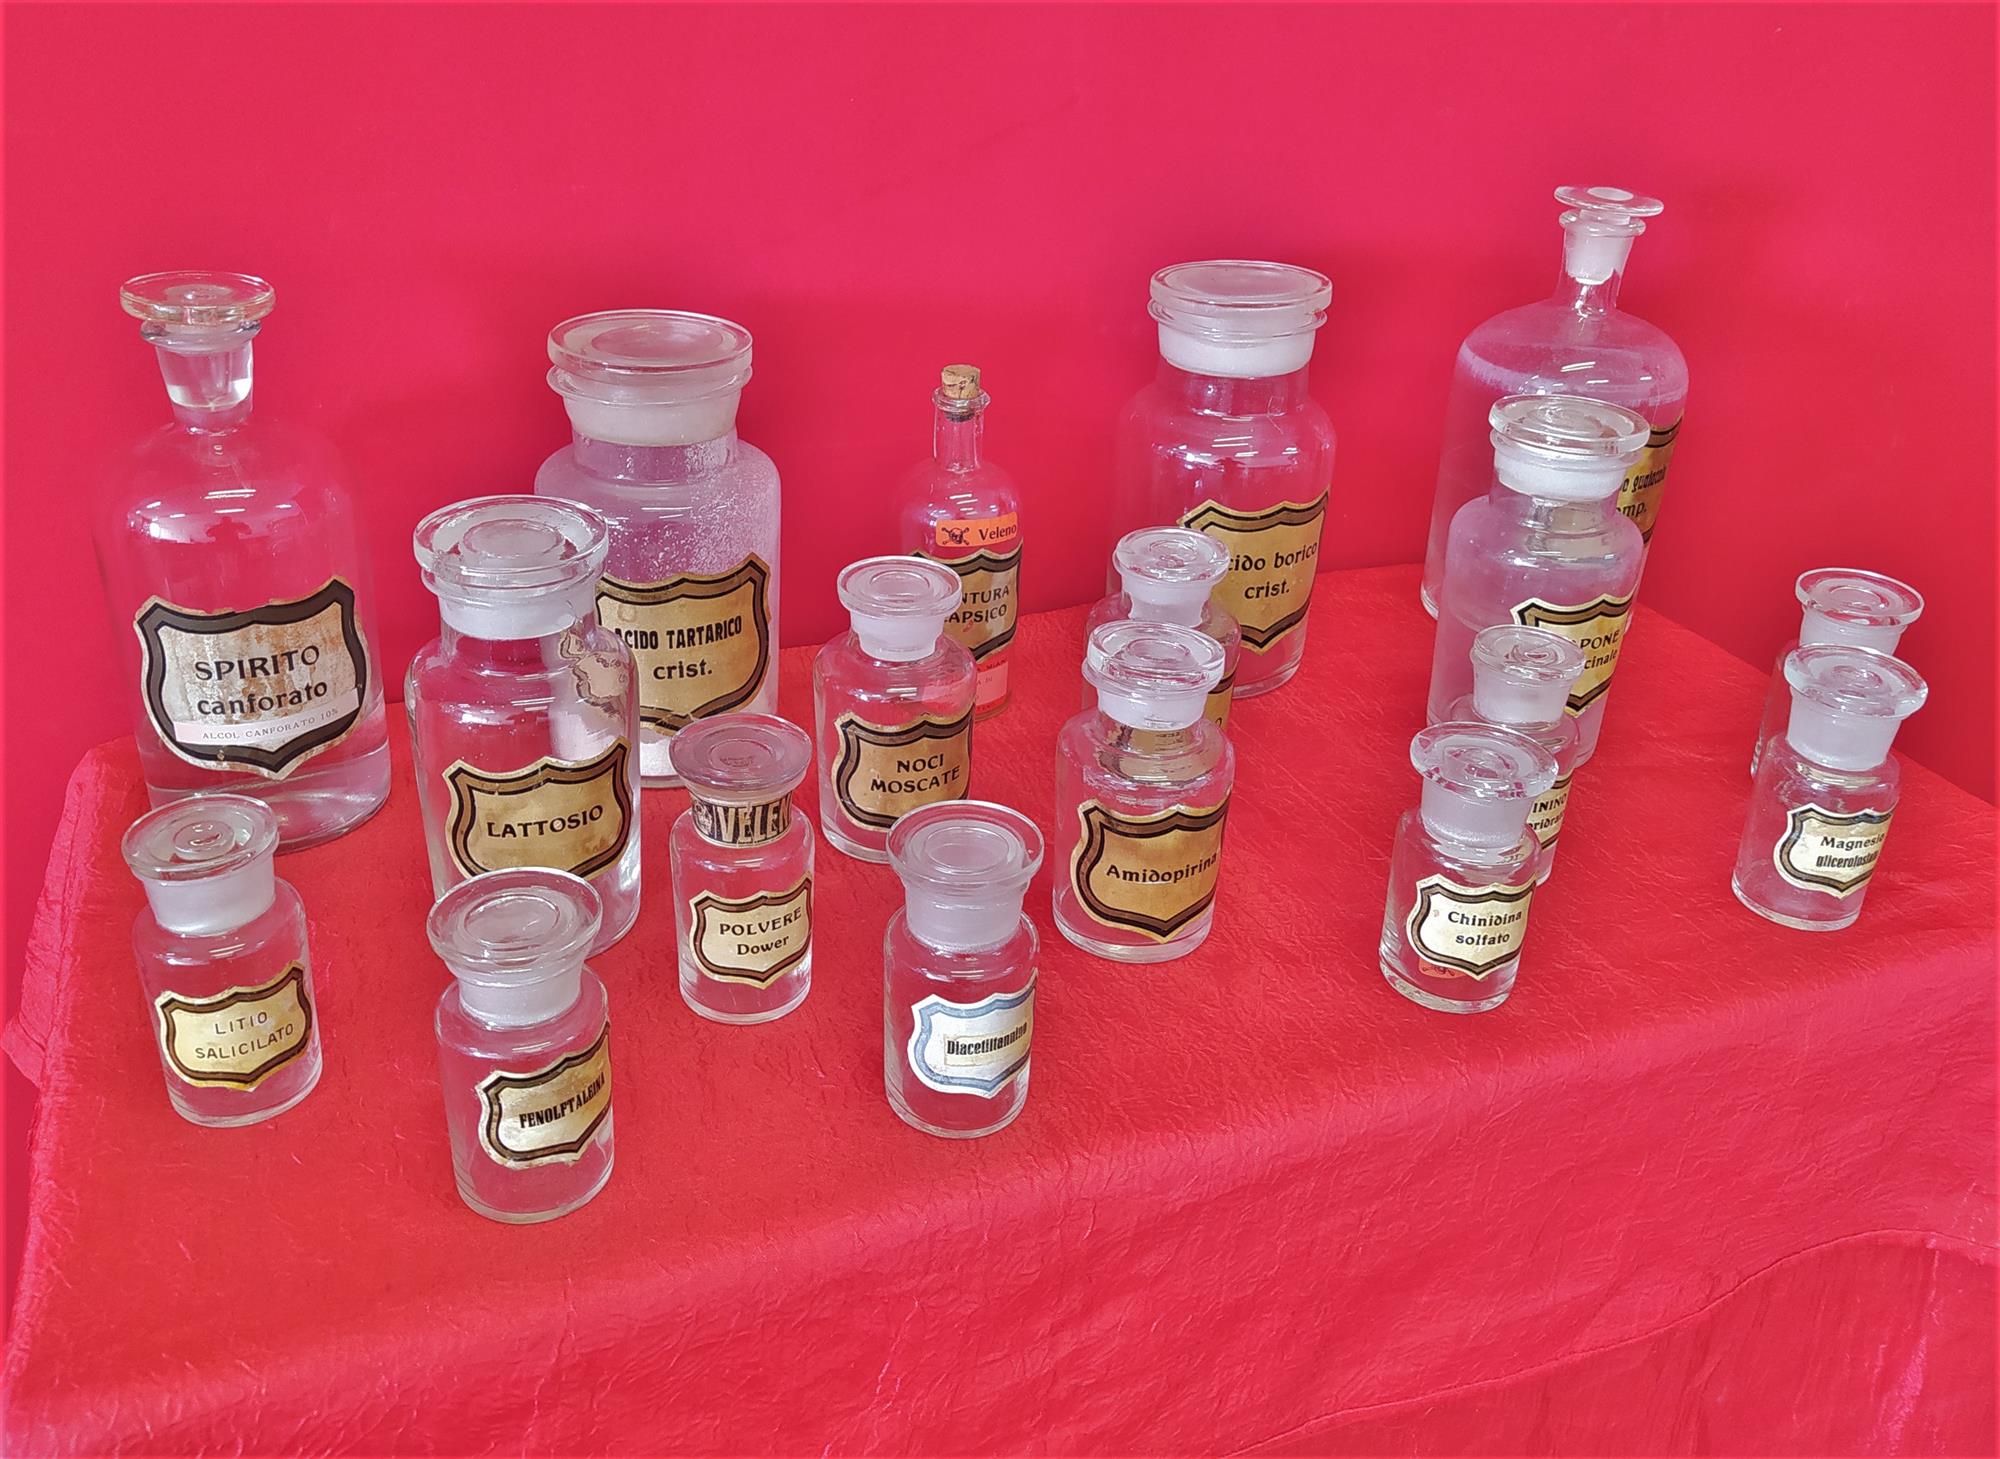 Pharmacy jars and bottles